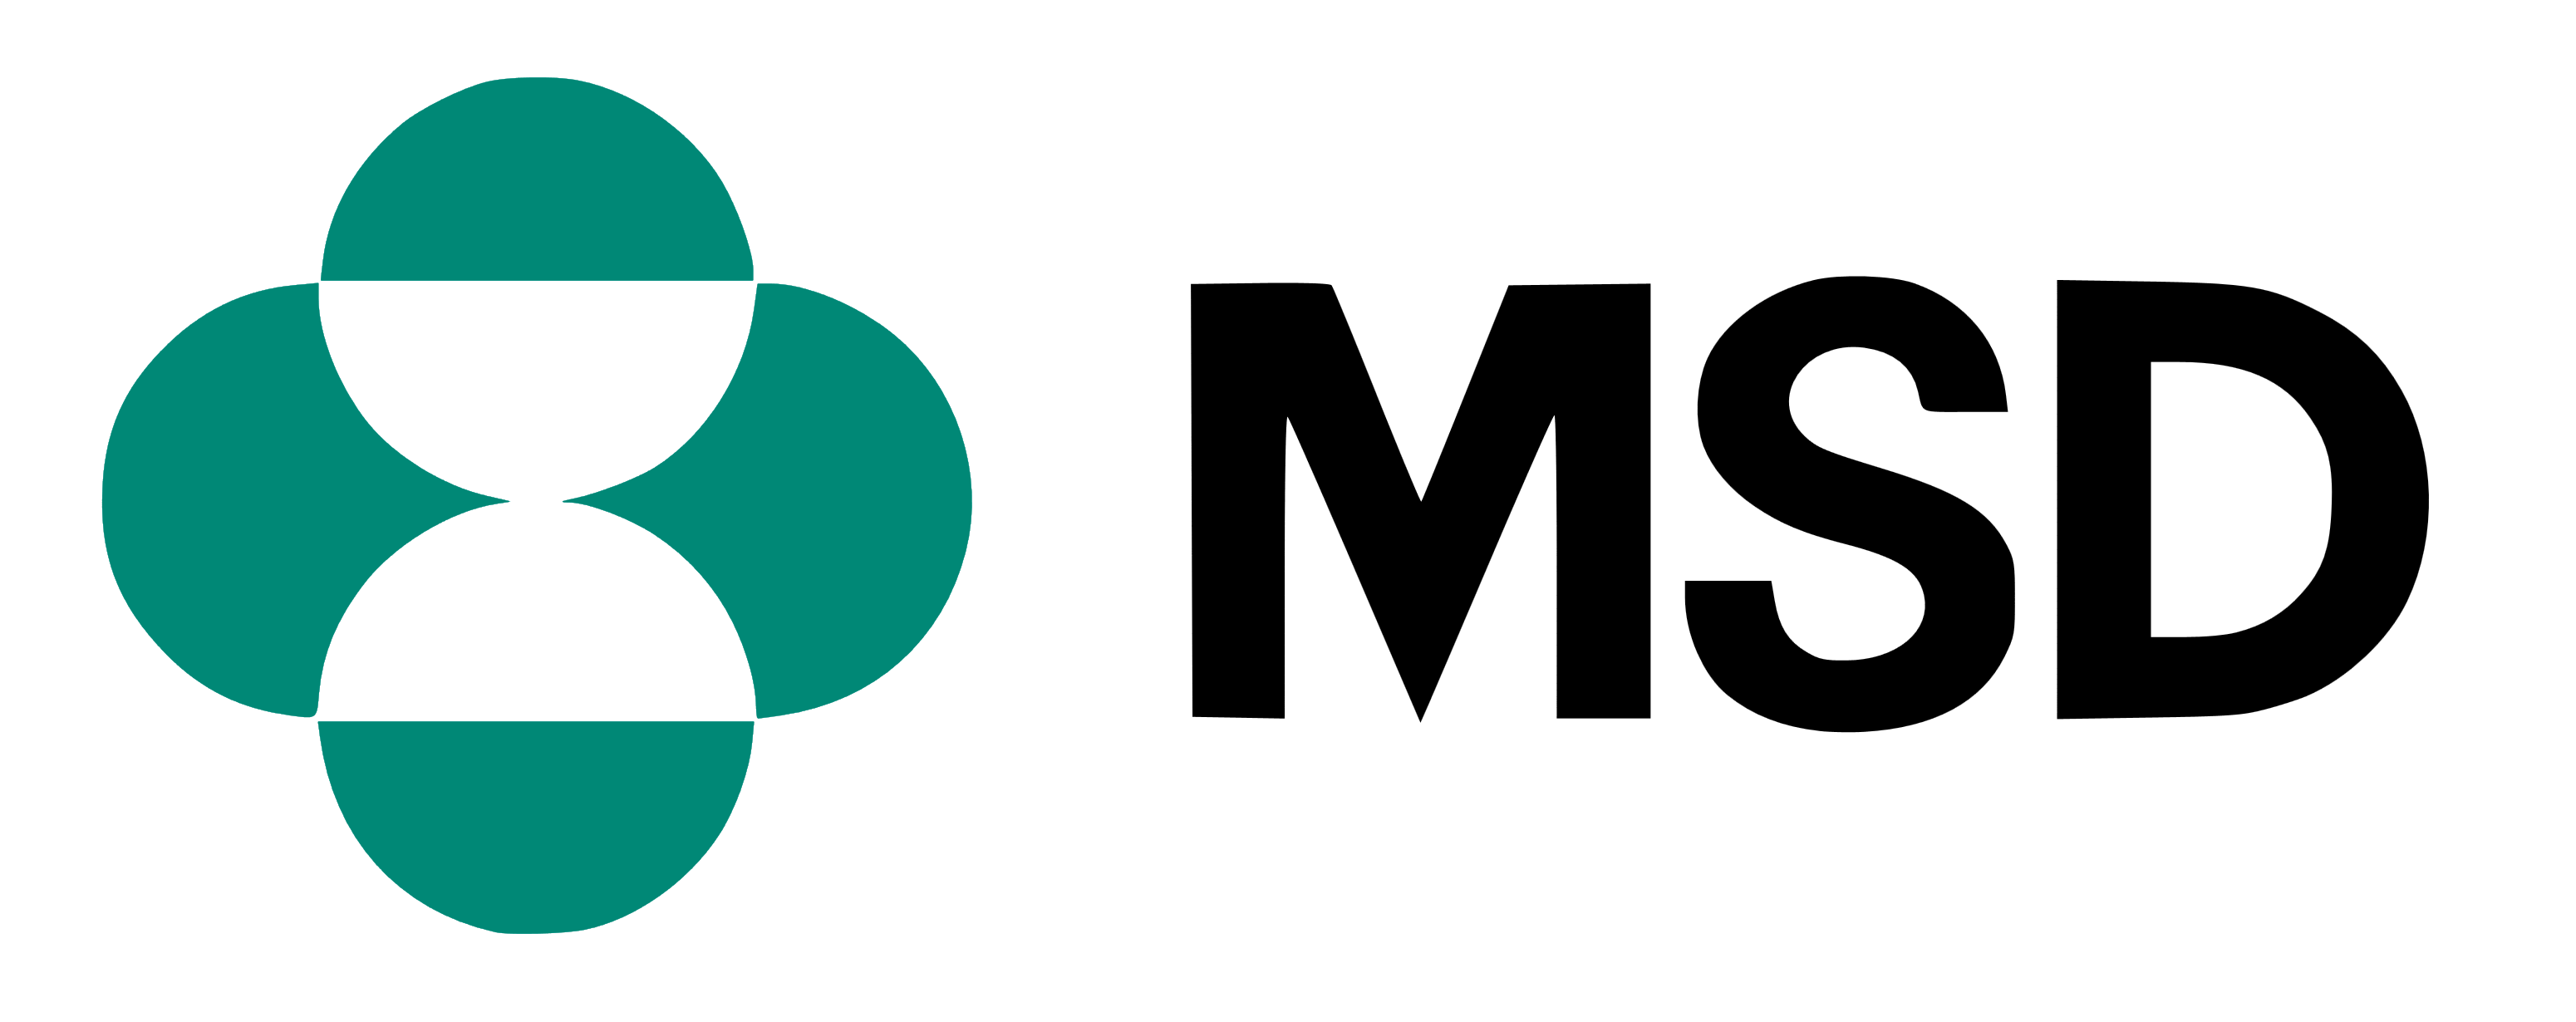 Imagini pentru logo msd